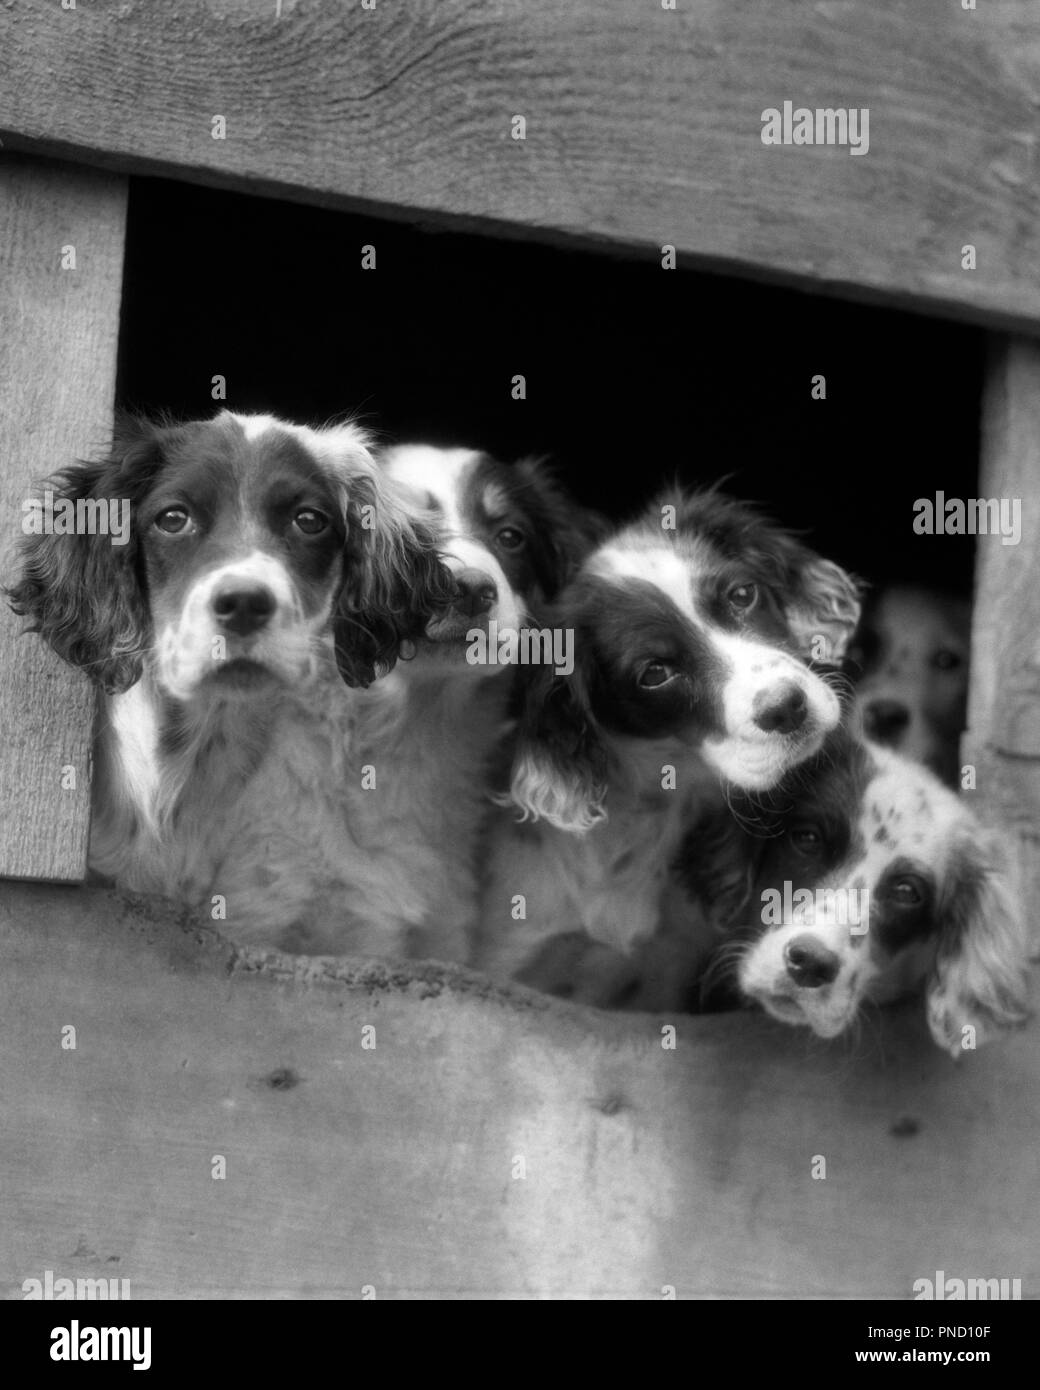 Années 1920 Années 1930 cinq chiens Chiots SETTER ANGLAIS AVEC LES CHEFS QUI SORT DE L'OUVERTURE EN CHENIL LOOKING AT CAMERA - d2090 HAR001 EXTÉRIEUR HARS ESPOIR SETTER CHIOTS BLOQUÉE EN OCCASION DE POOCH SURPEUPLEMENT CONNEXION CLOSE-UP DARLING élégant curieux qui veulent être ensemble MAMMIFÈRE CANIN LONESOME ADORABLE ATTRAYANT HAR001 NOIR ET BLANC à l'ANCIENNE curieux Banque D'Images